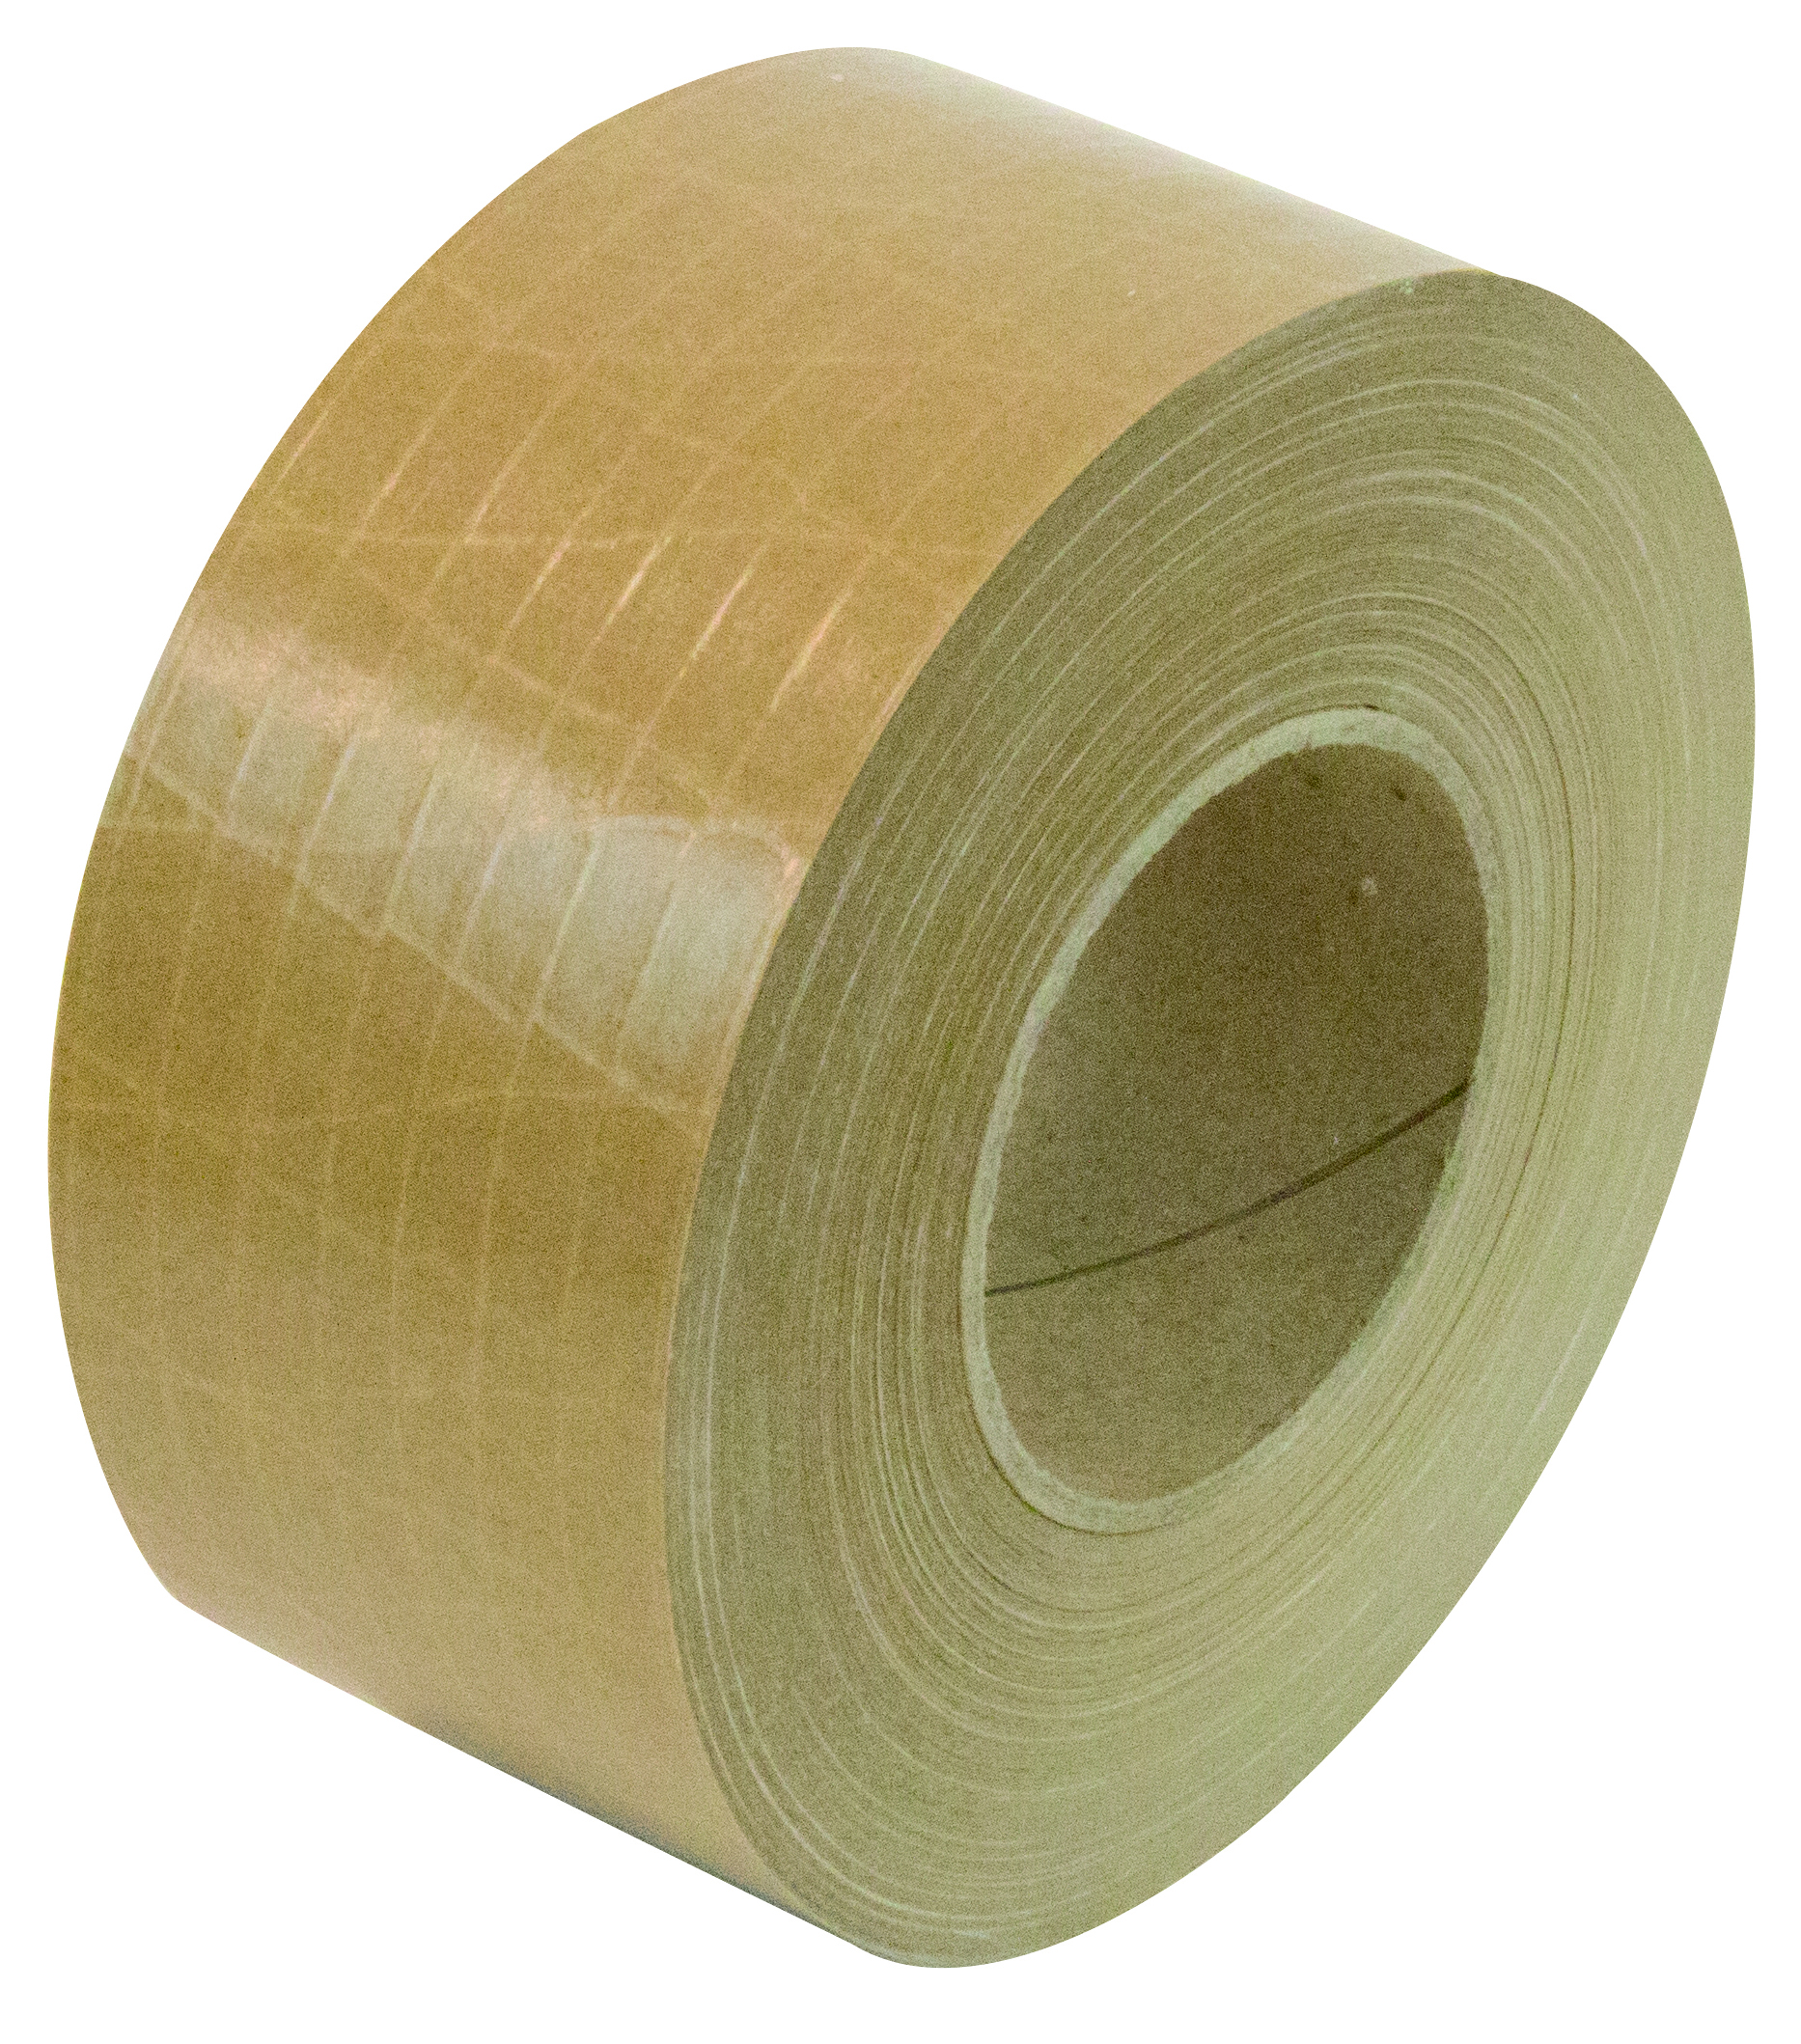 Bande papier renforcé diagonale Le matériau de fermeture professionnel le plus solide et durable. Pour les colis très lourds pesant jusqu'à plus de 50 kg.